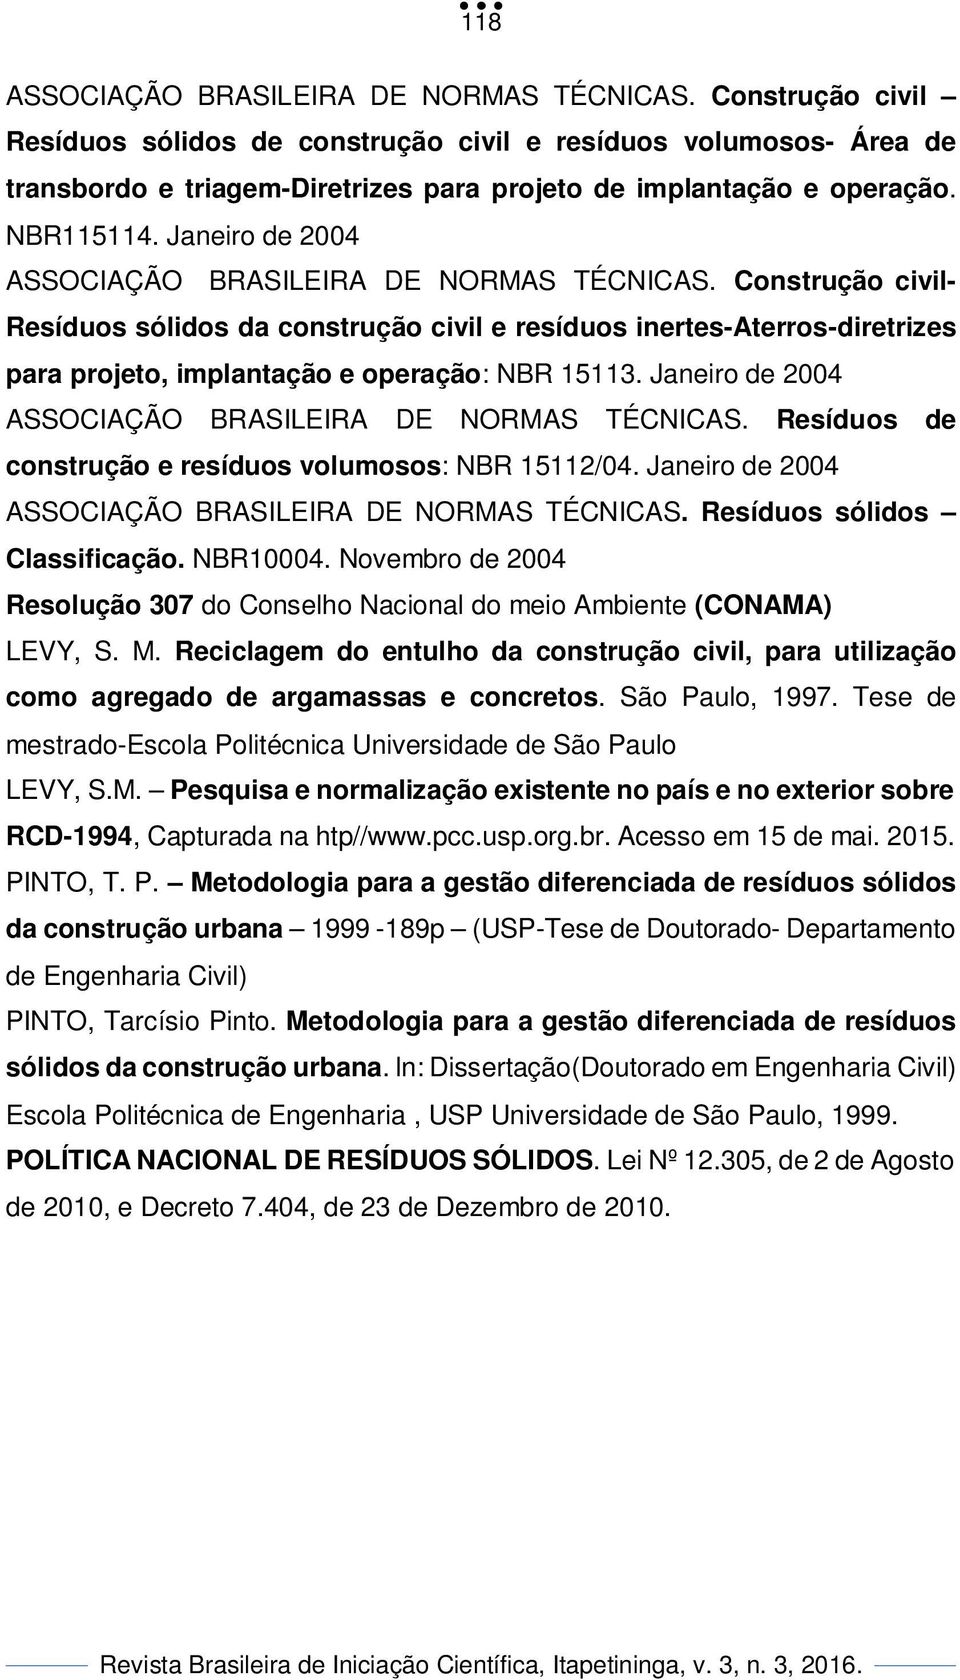 Janeiro de 2004 ASSOCIAÇÃO BRASILEIRA DE NORMAS TÉCNICAS. Construção civil- Resíduos sólidos da construção civil e resíduos inertes-aterros-diretrizes para projeto, implantação e operação: NBR 15113.